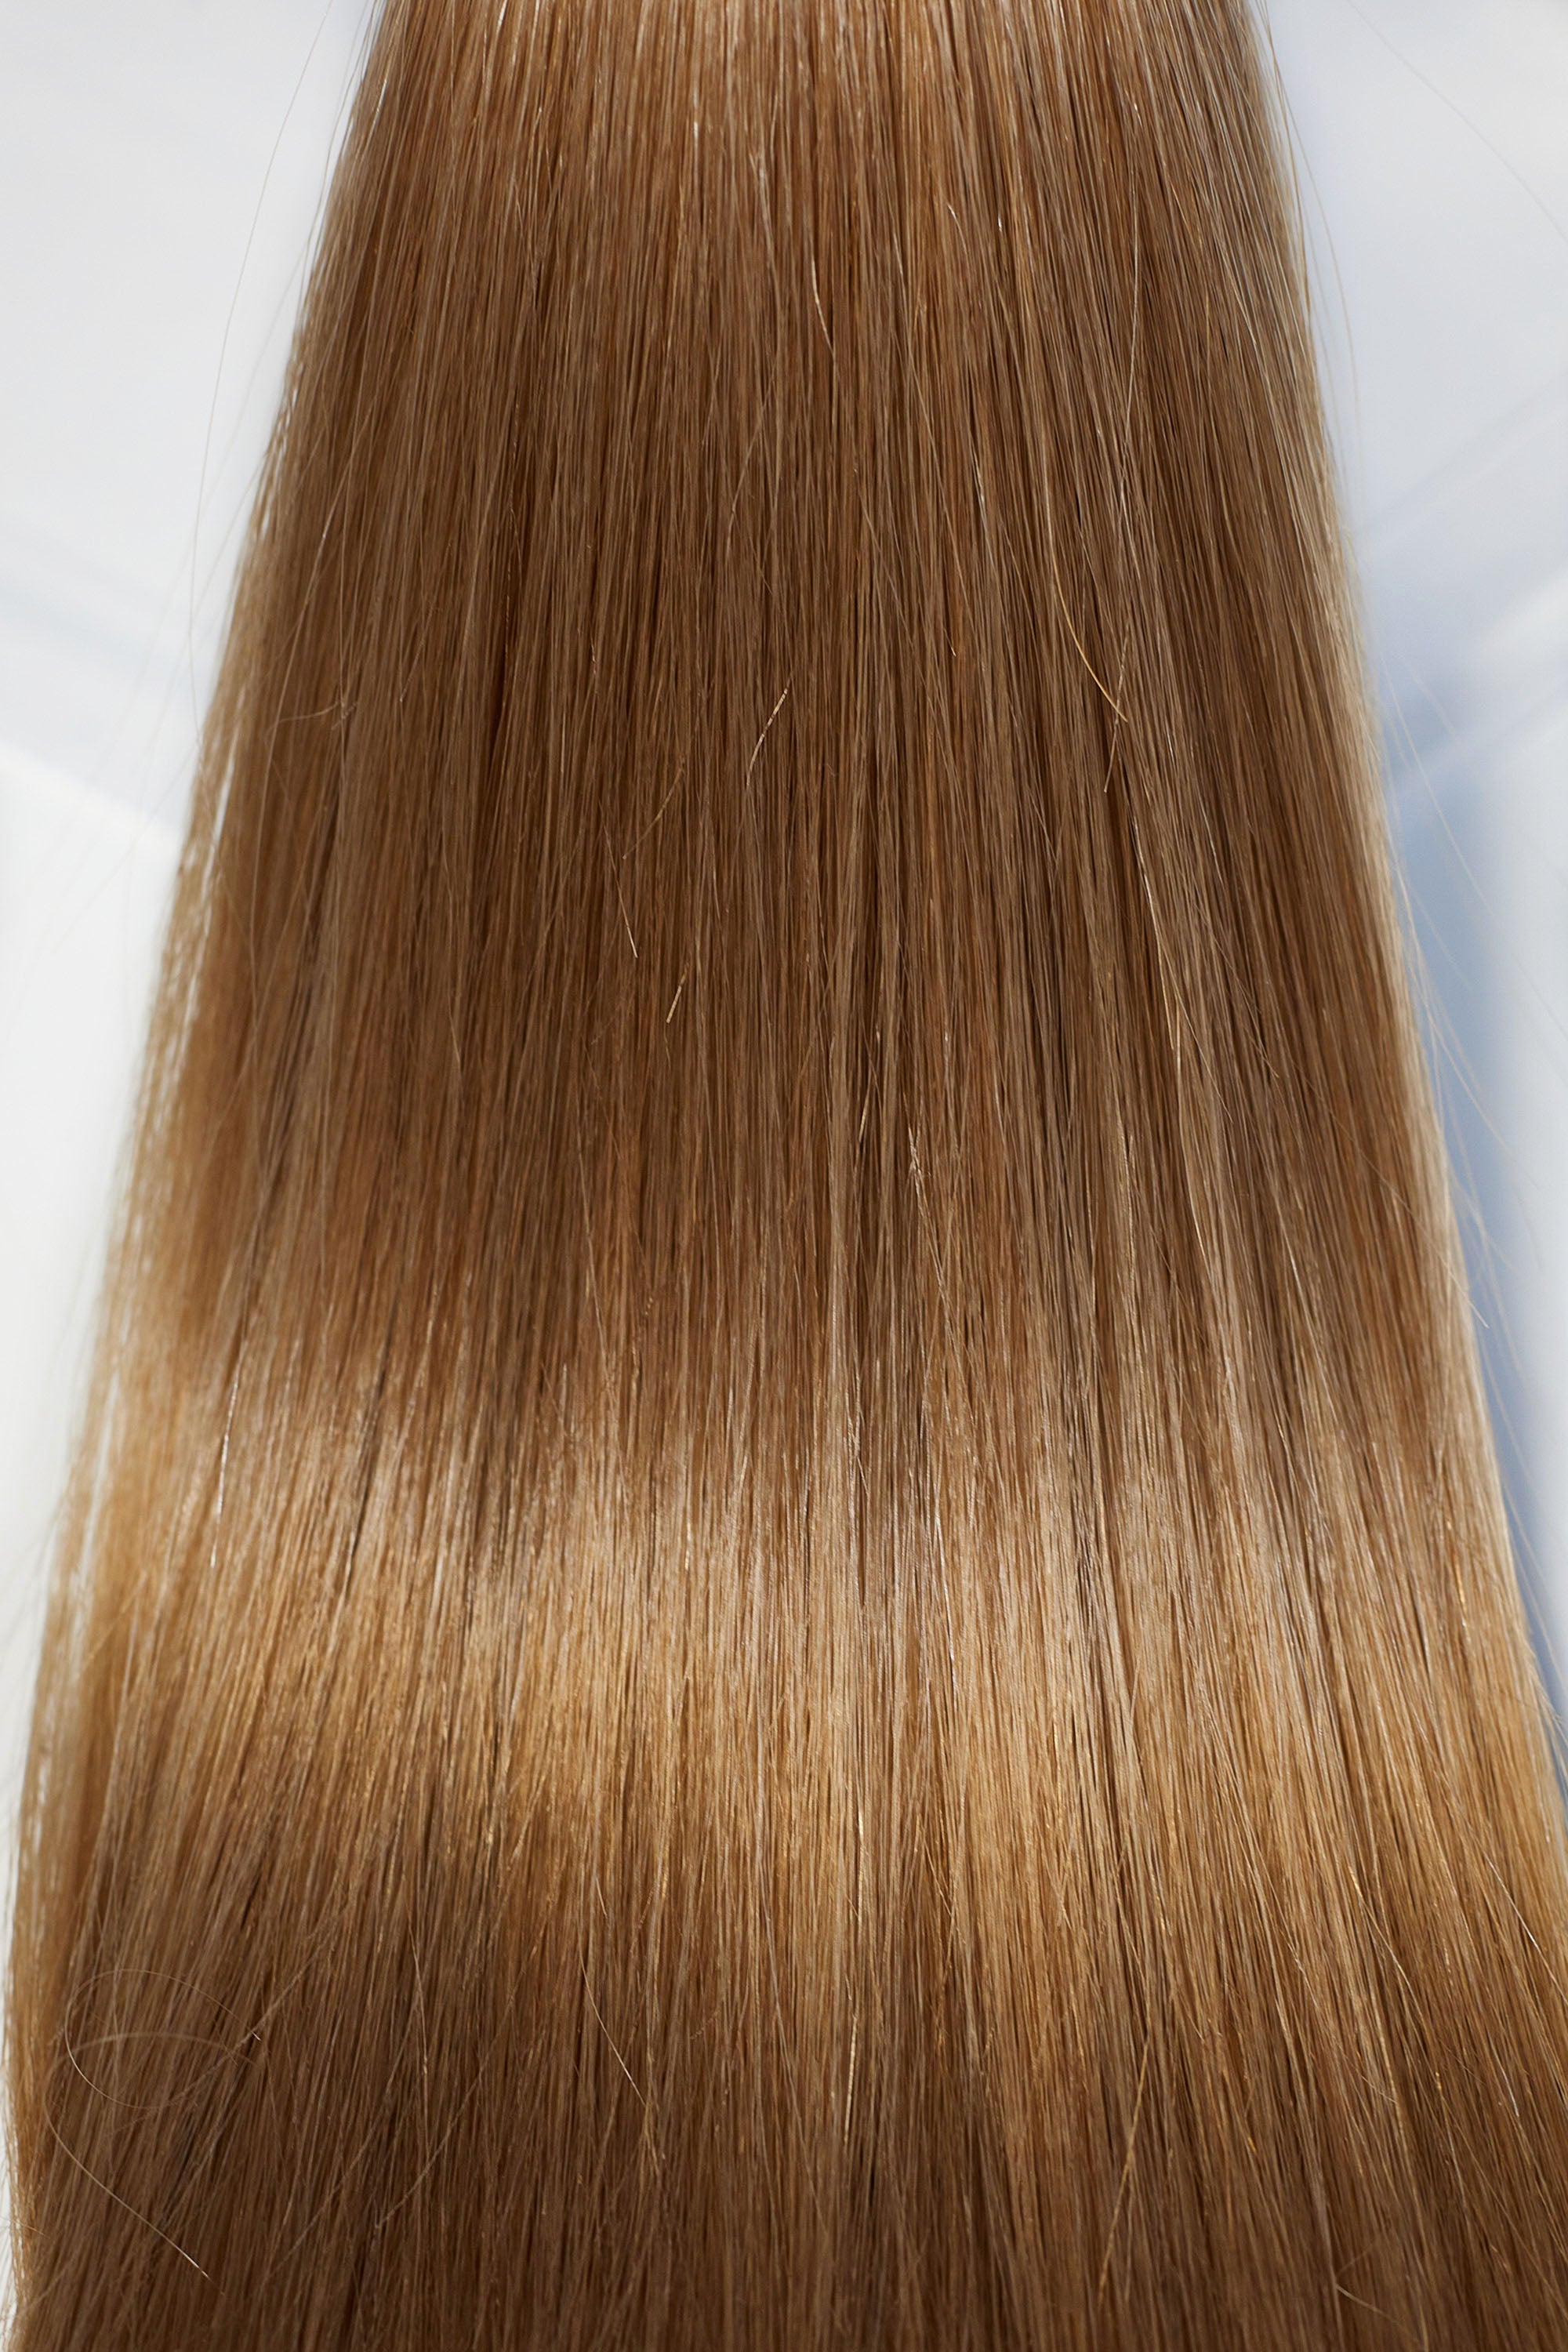 Behair professional Bulk hair "Premium" 26" (65cm) Natural Straight Caramel Brown #8 - 25g hair extensions